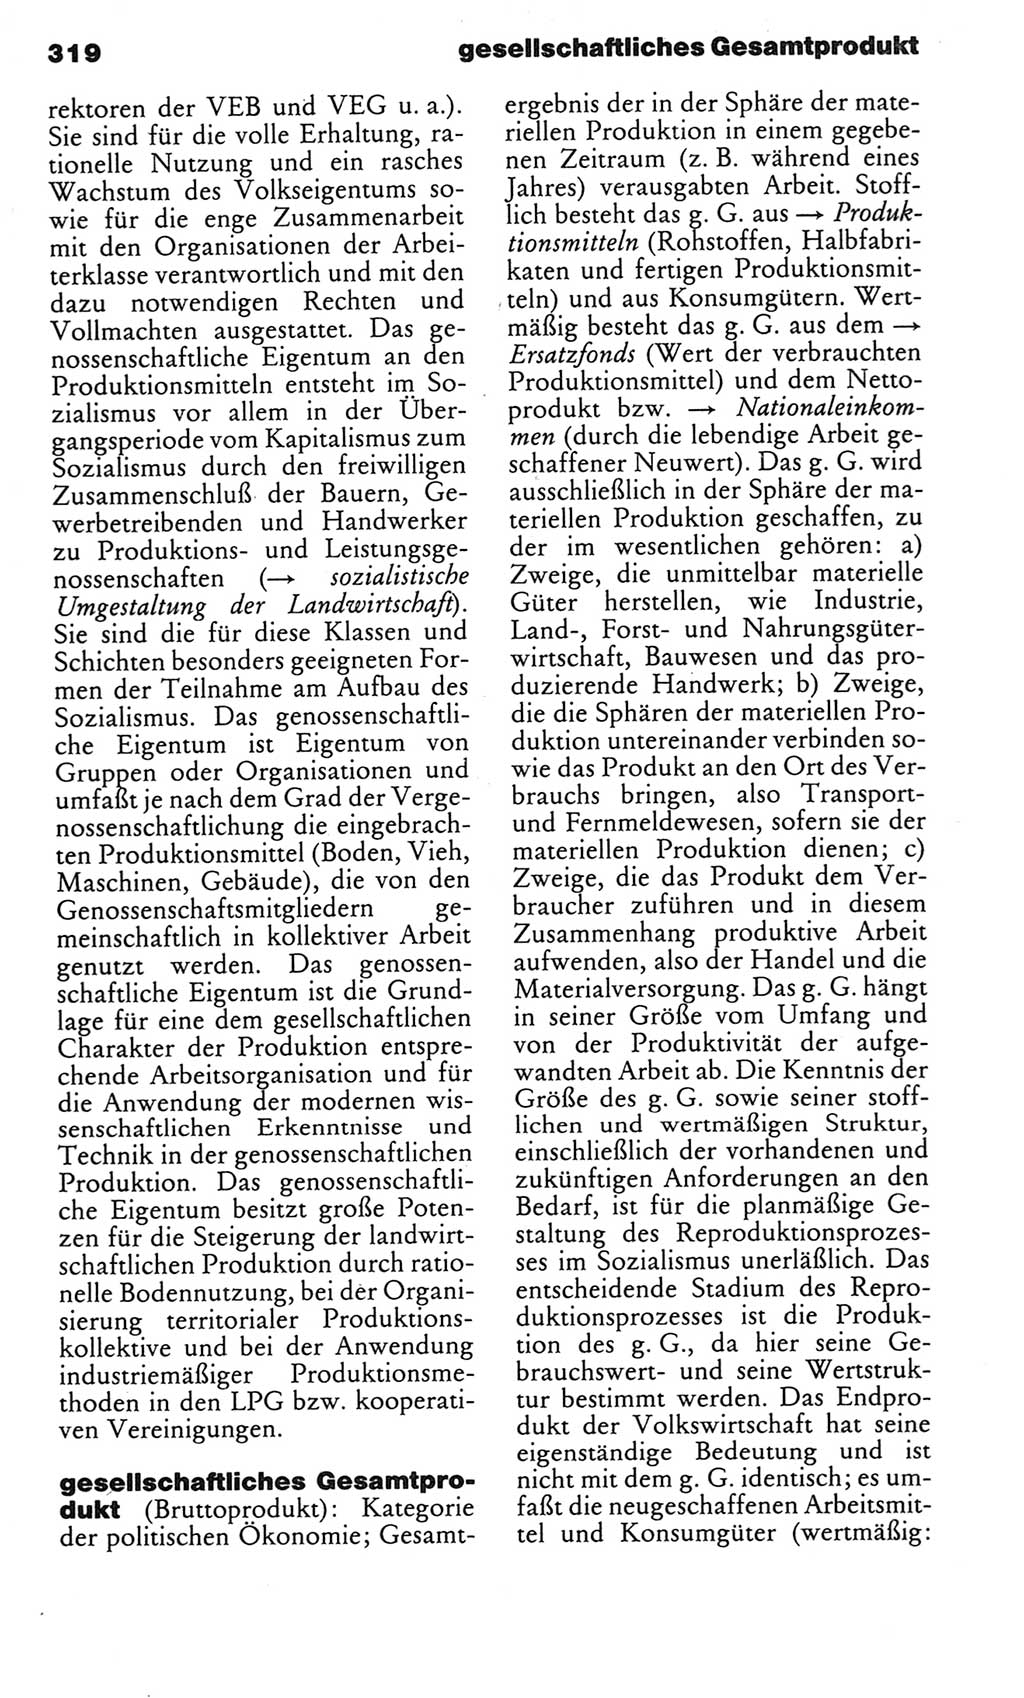 Kleines politisches Wörterbuch [Deutsche Demokratische Republik (DDR)] 1983, Seite 319 (Kl. pol. Wb. DDR 1983, S. 319)